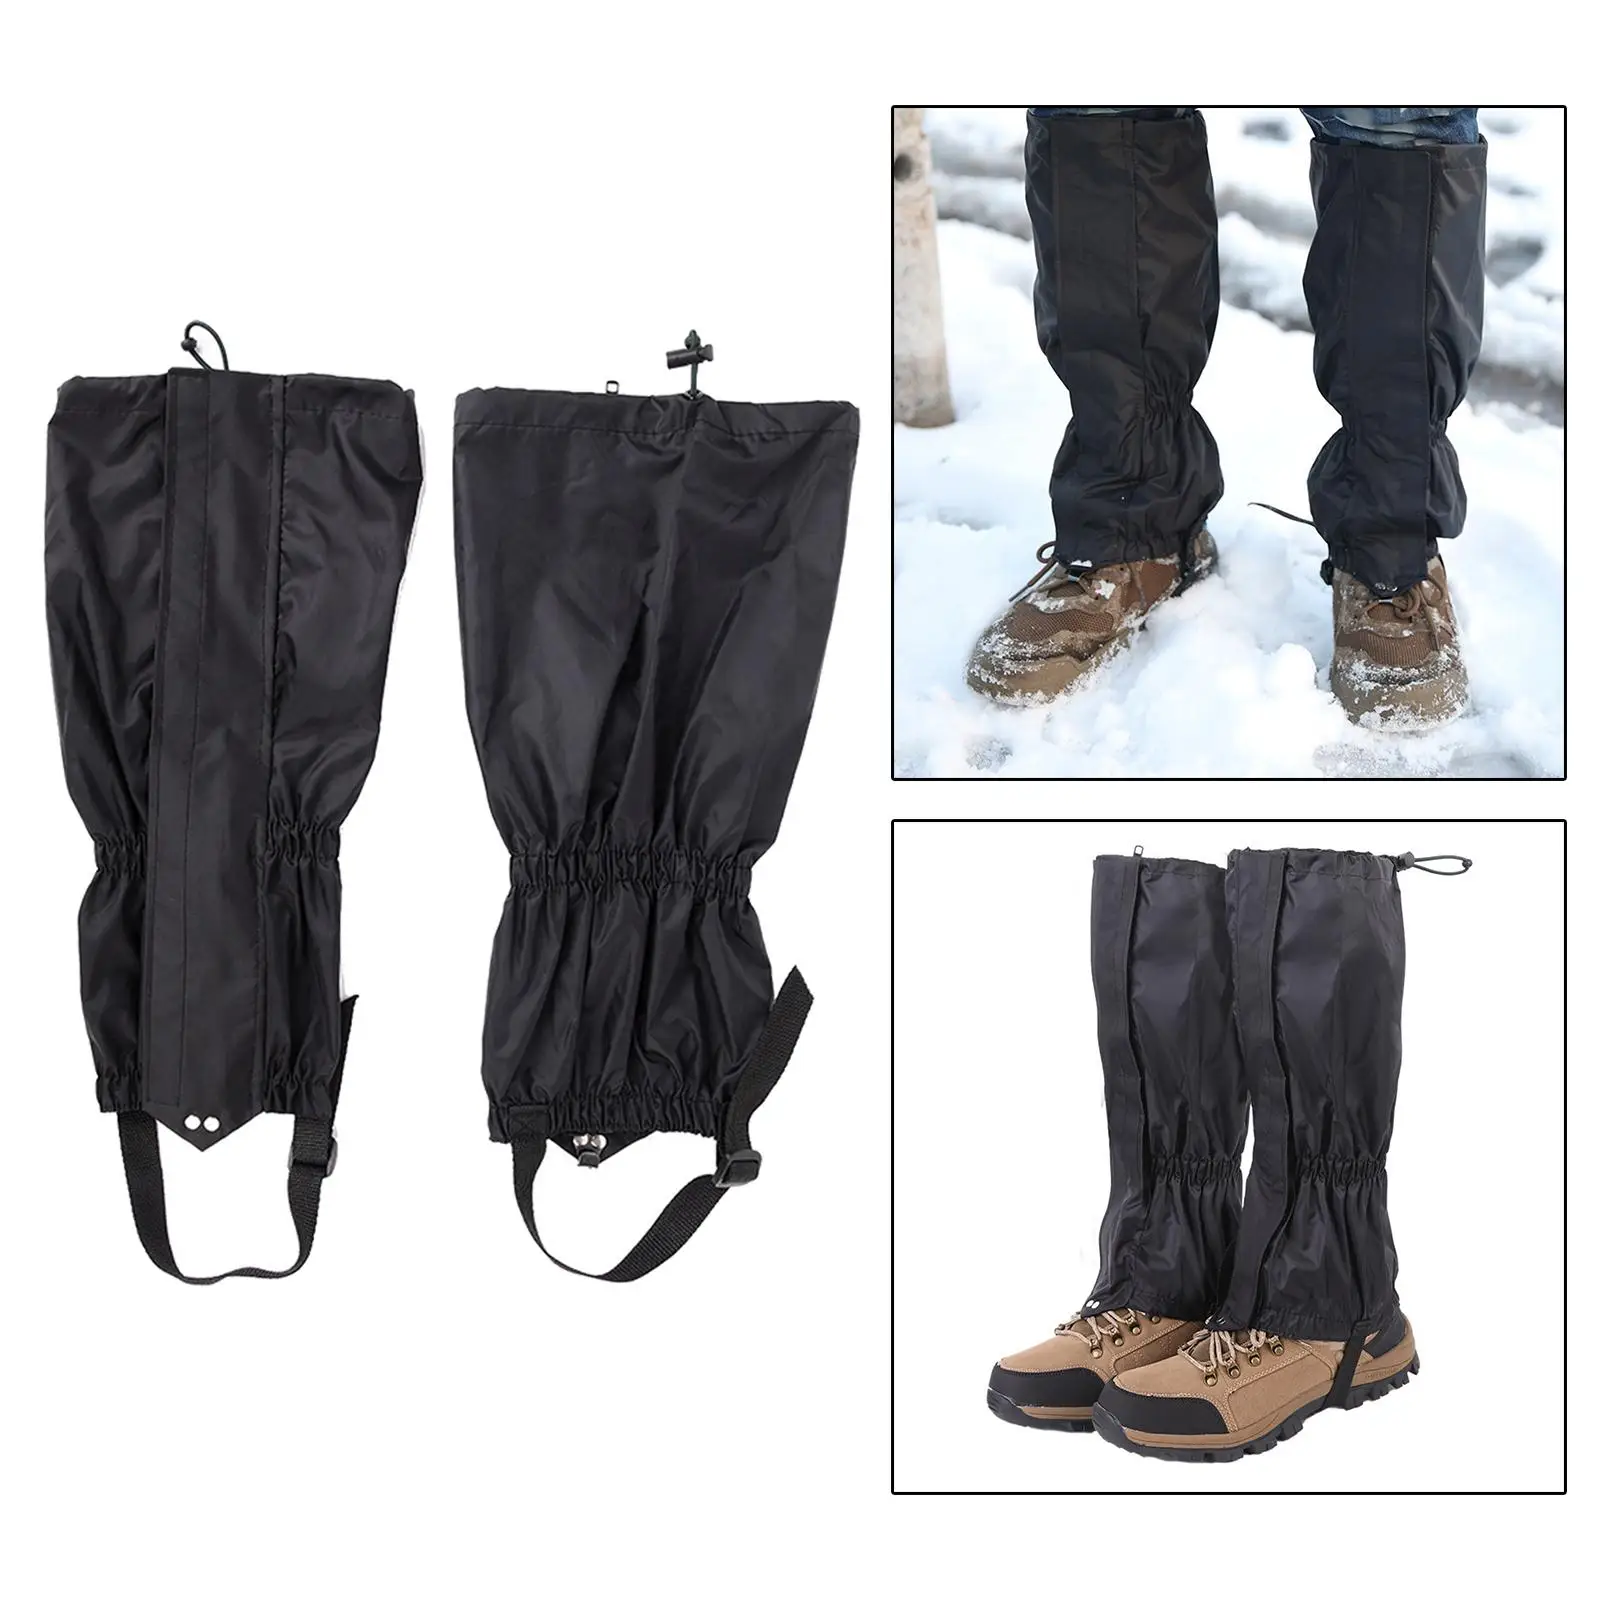 Waterproof Leg Gaiters Snow Boot Adjustable for Outdoor Adults Men Women